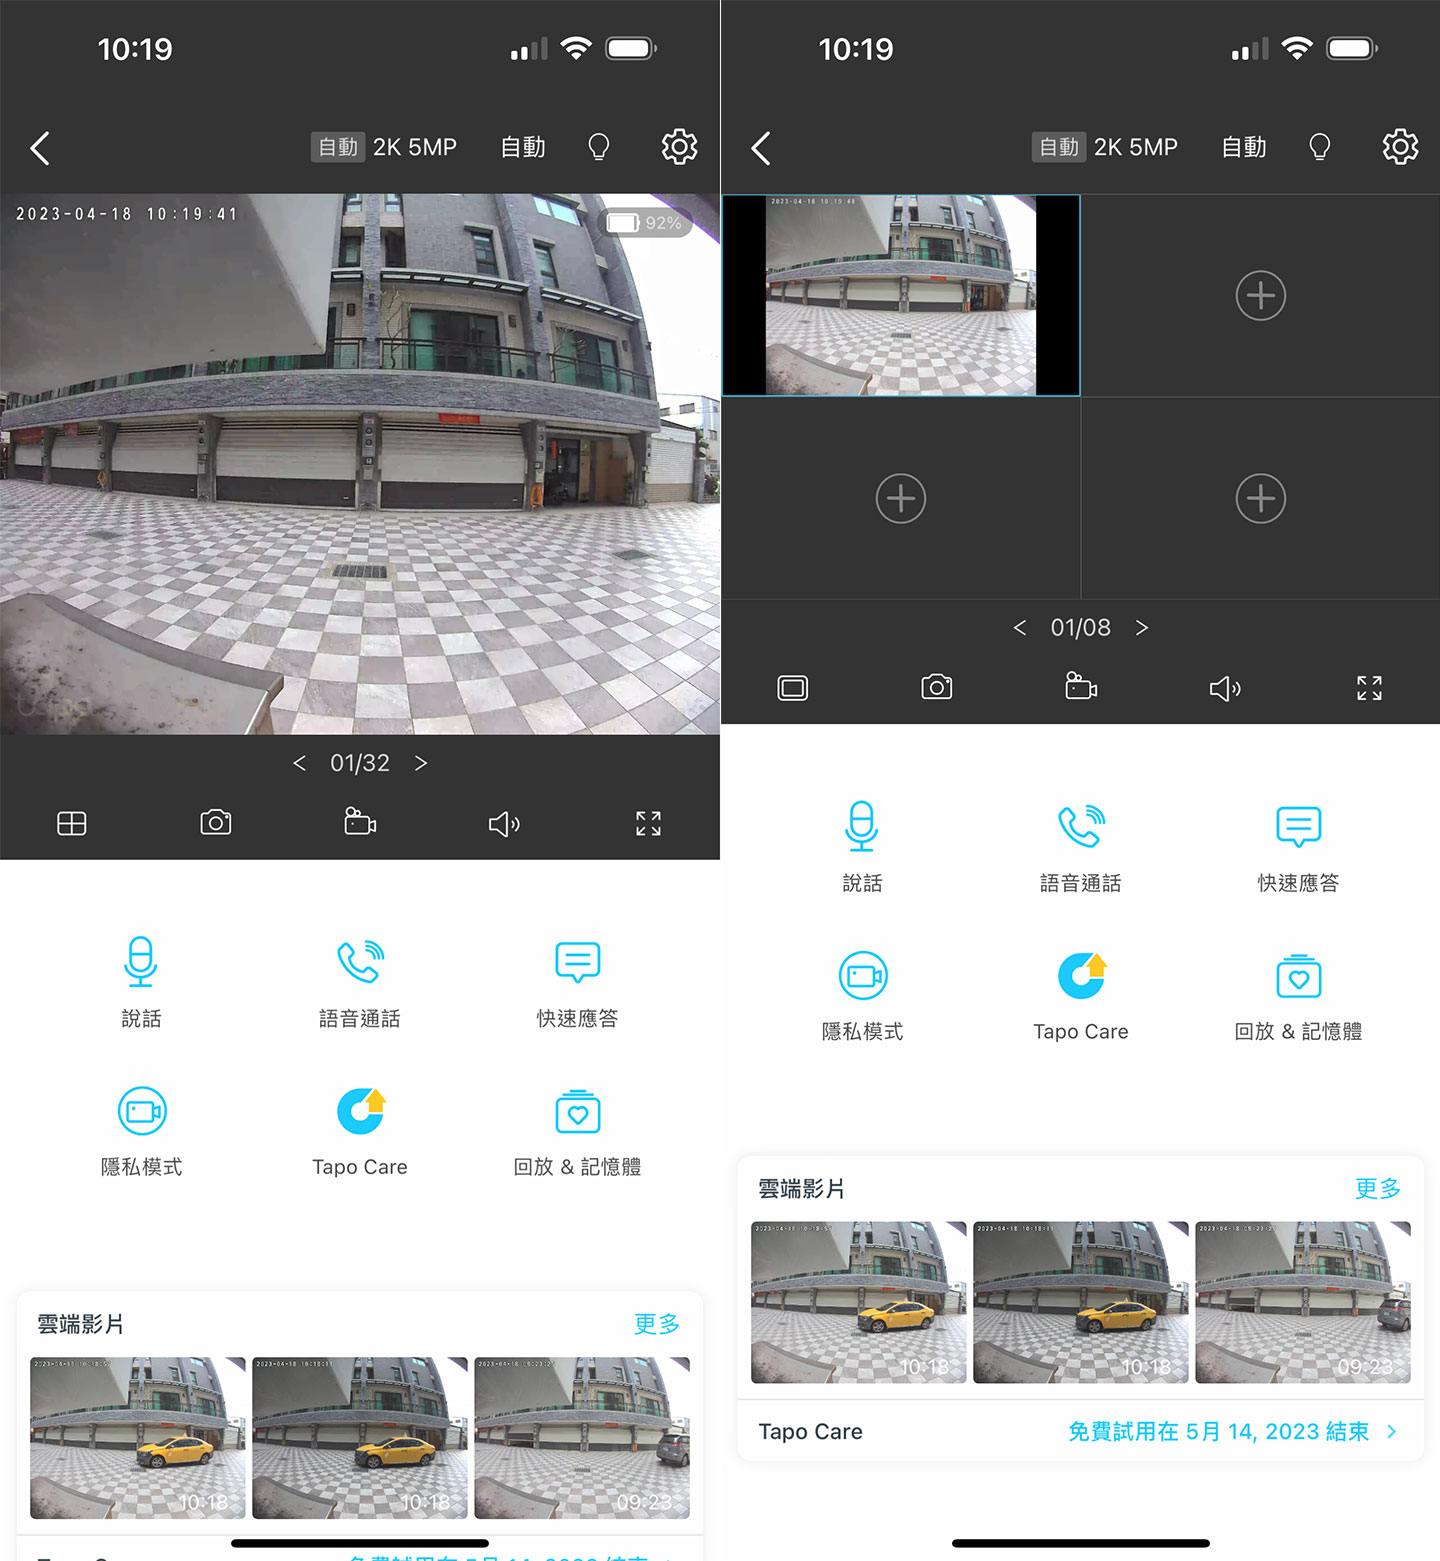 Tapo App 可即時查看門鈴攝影機的拍攝畫面，若家有多組攝影機，也可切換為分割畫面同掌握，畫面下方也有常用功能鍵與已儲的事件影片。 ▲ 當攝影機偵測到人物或動態時，也會自動以訊息推通知，點選後即可看到當下的即時畫面或是已儲的事件影像。 ▲ 在雲端影片清單，也可以看到已儲的影像事件列表，以及對應的時間、偵測類別，方便我們快速查找並即時觀看或下載至手機。 ▲ 若有人按門鈴，手機也會收到門鈴視訊的通知，點選後即可進入介面進行語音通話，或選擇快速應，放預錄的回應語音。